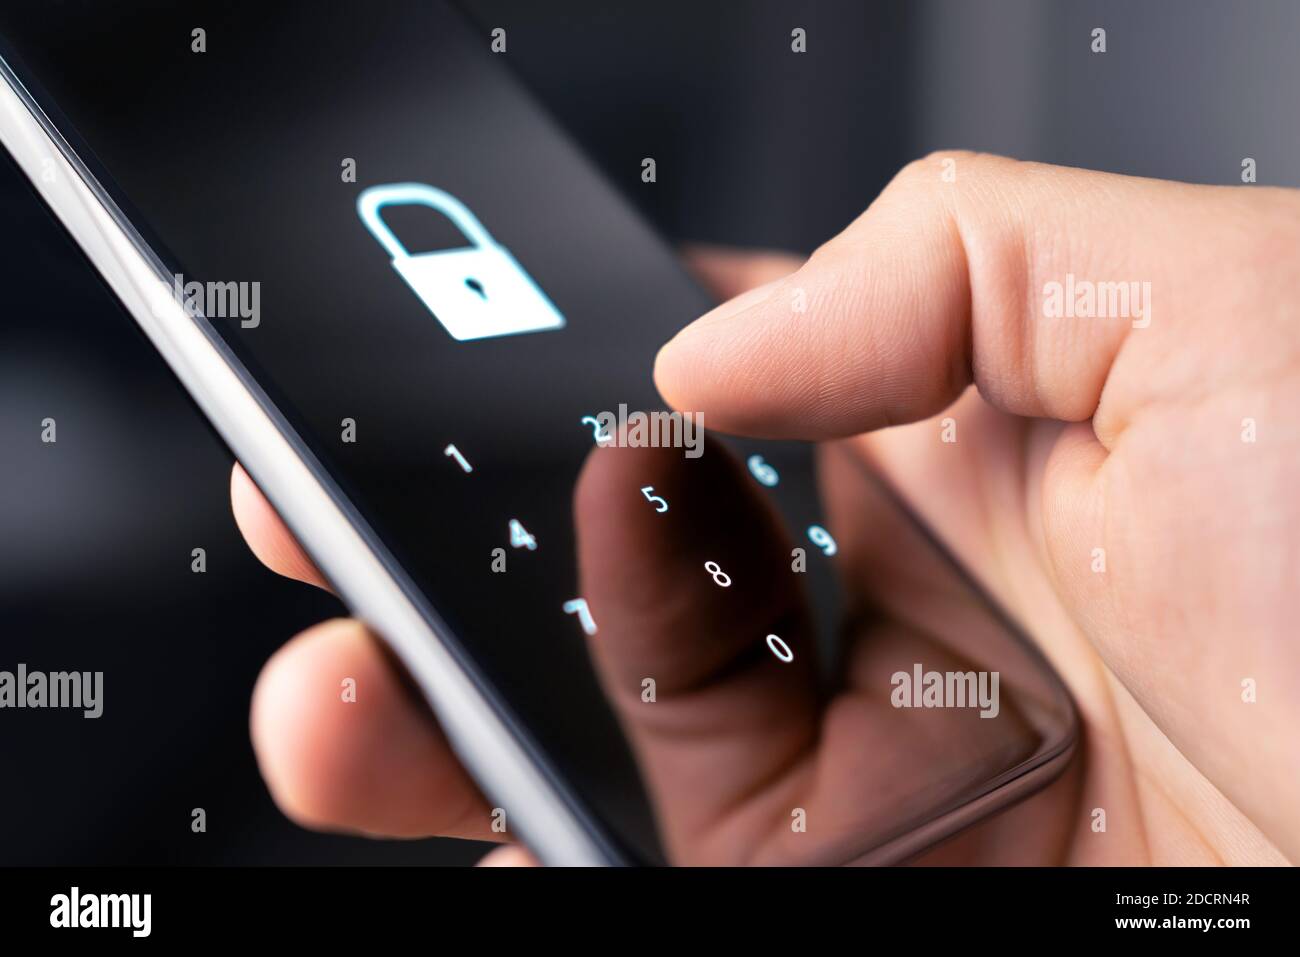 Código de seguridad del teléfono móvil, contraseña o bloqueo para la privacidad y verificación personales en línea. 2FA (autenticación de dos factores) y código de acceso para datos. Foto de stock